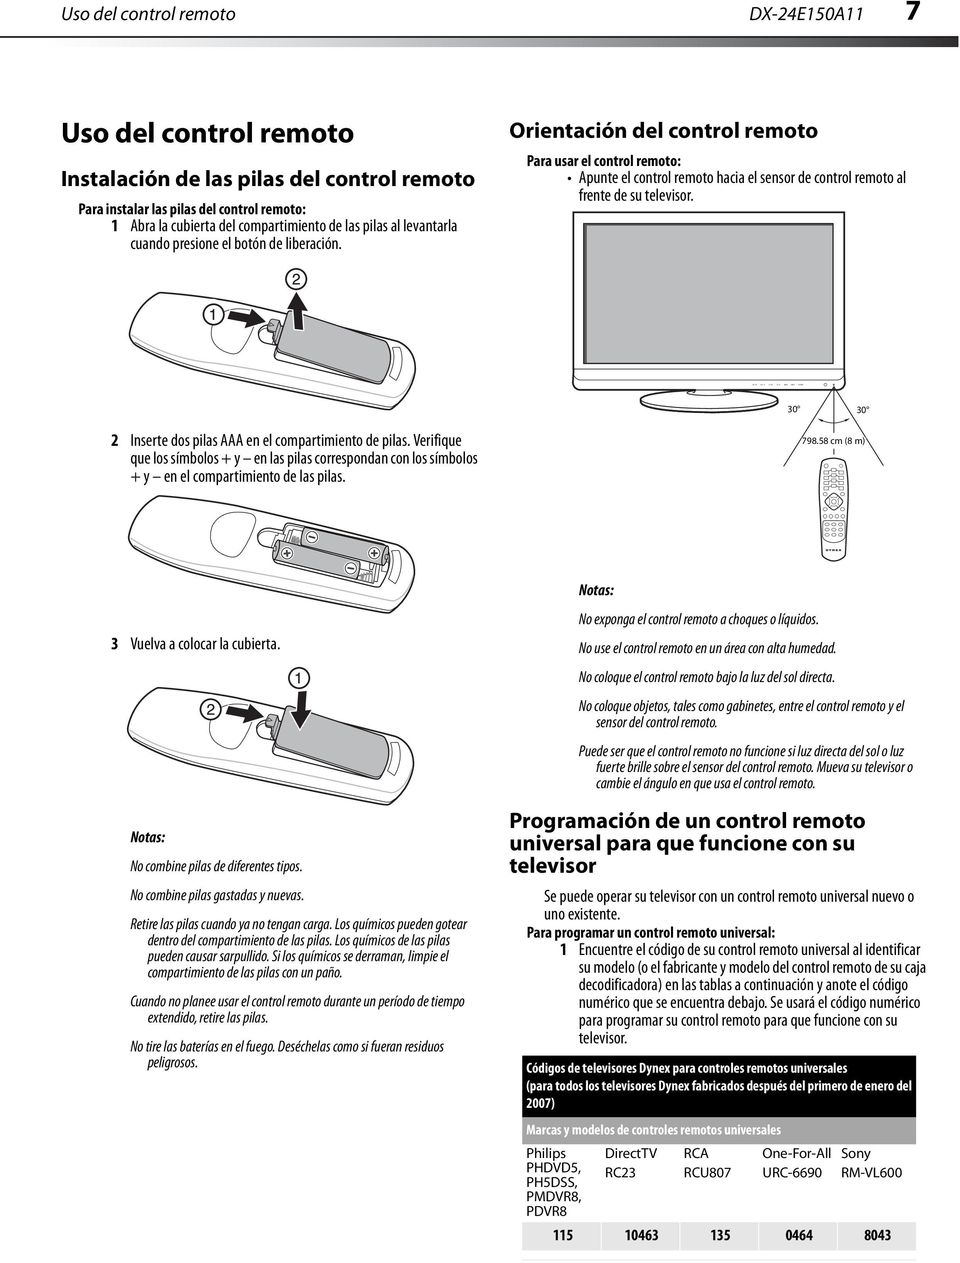 Orientación del control remoto Para usar el control remoto: Apunte el control remoto hacia el sensor de control remoto al frente de su televisor.